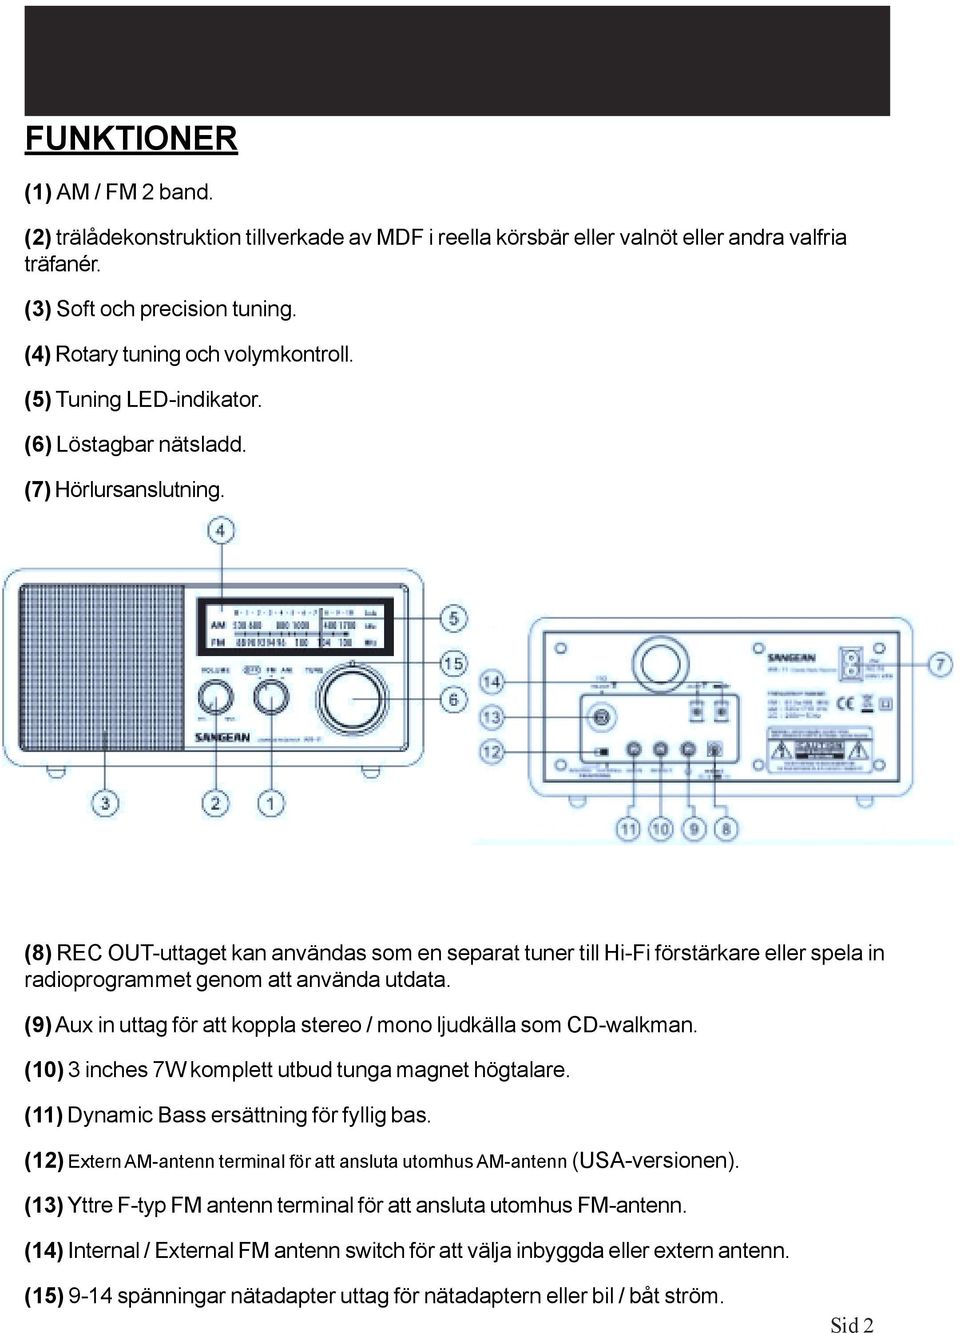 (8) REC OUT-uttaget kan användas som en separat tuner till Hi-Fi förstärkare eller spela in radioprogrammet genom att använda utdata.